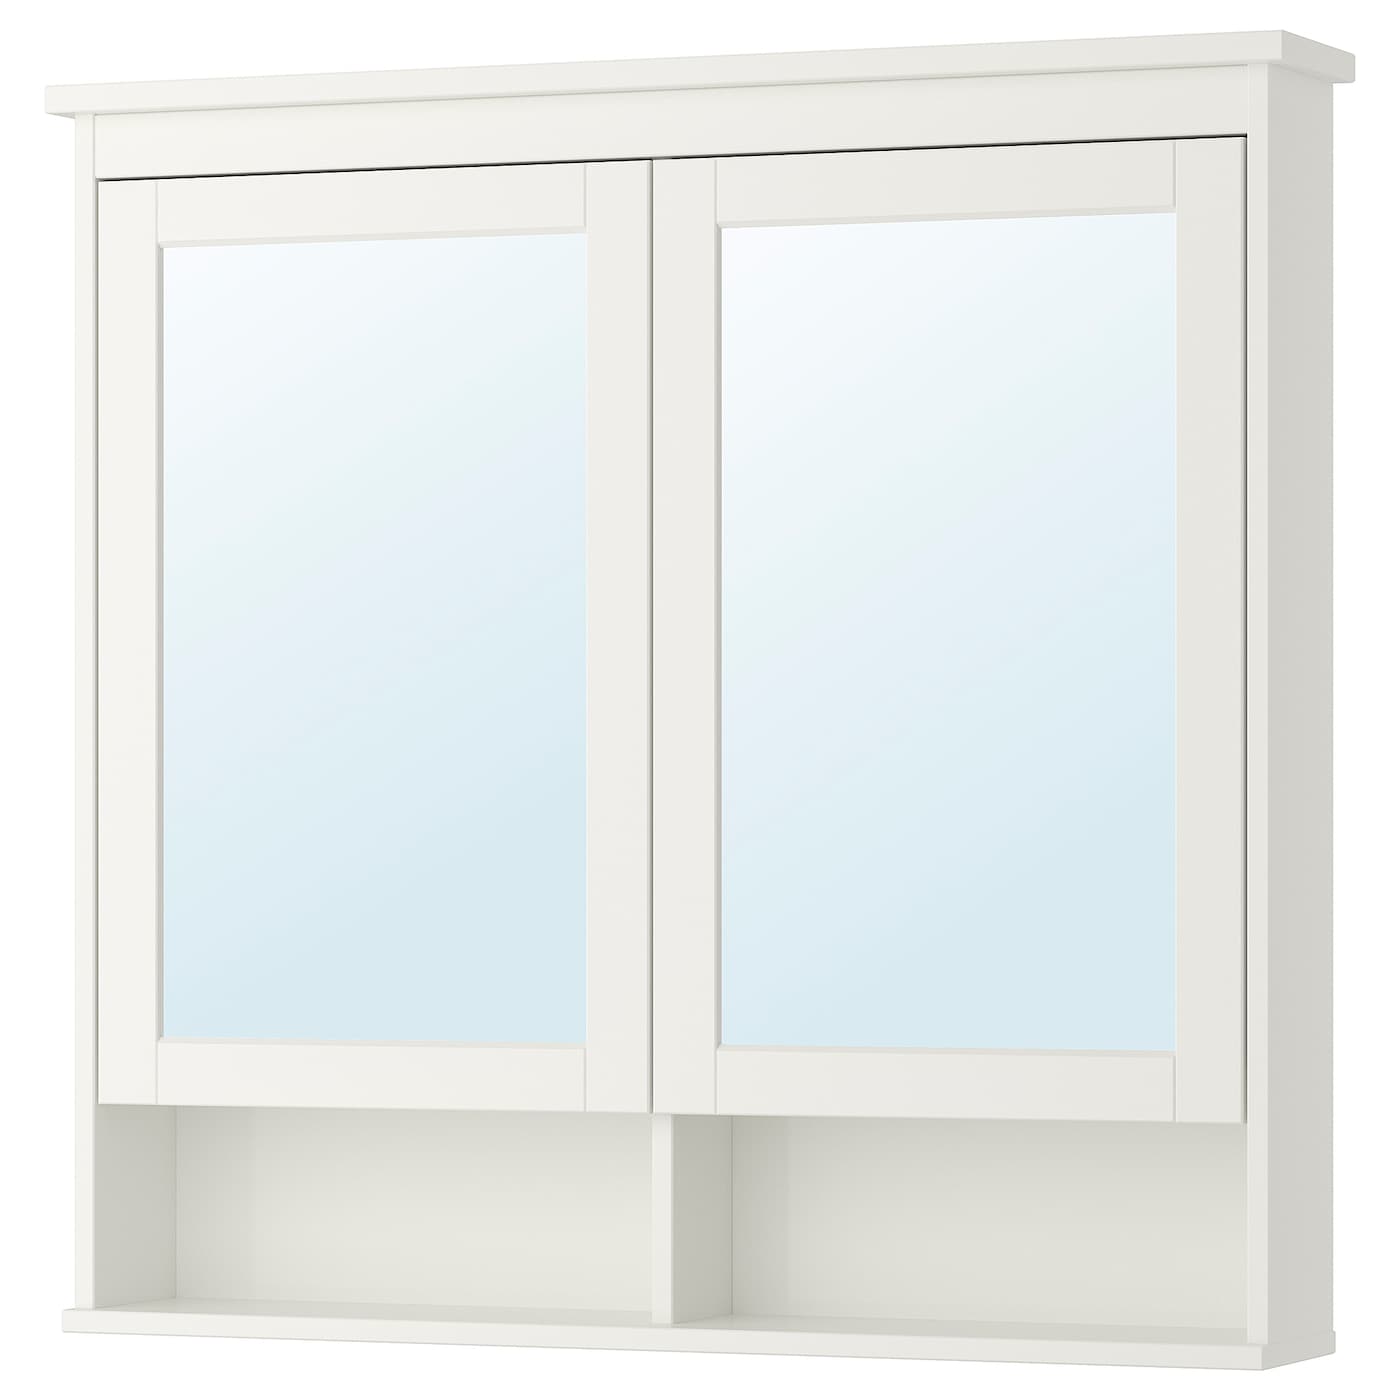 Шкафчик с зеркалом - HEMNES IKEA/ ХЕММНЕС ИКЕА,  103х98 см, белый